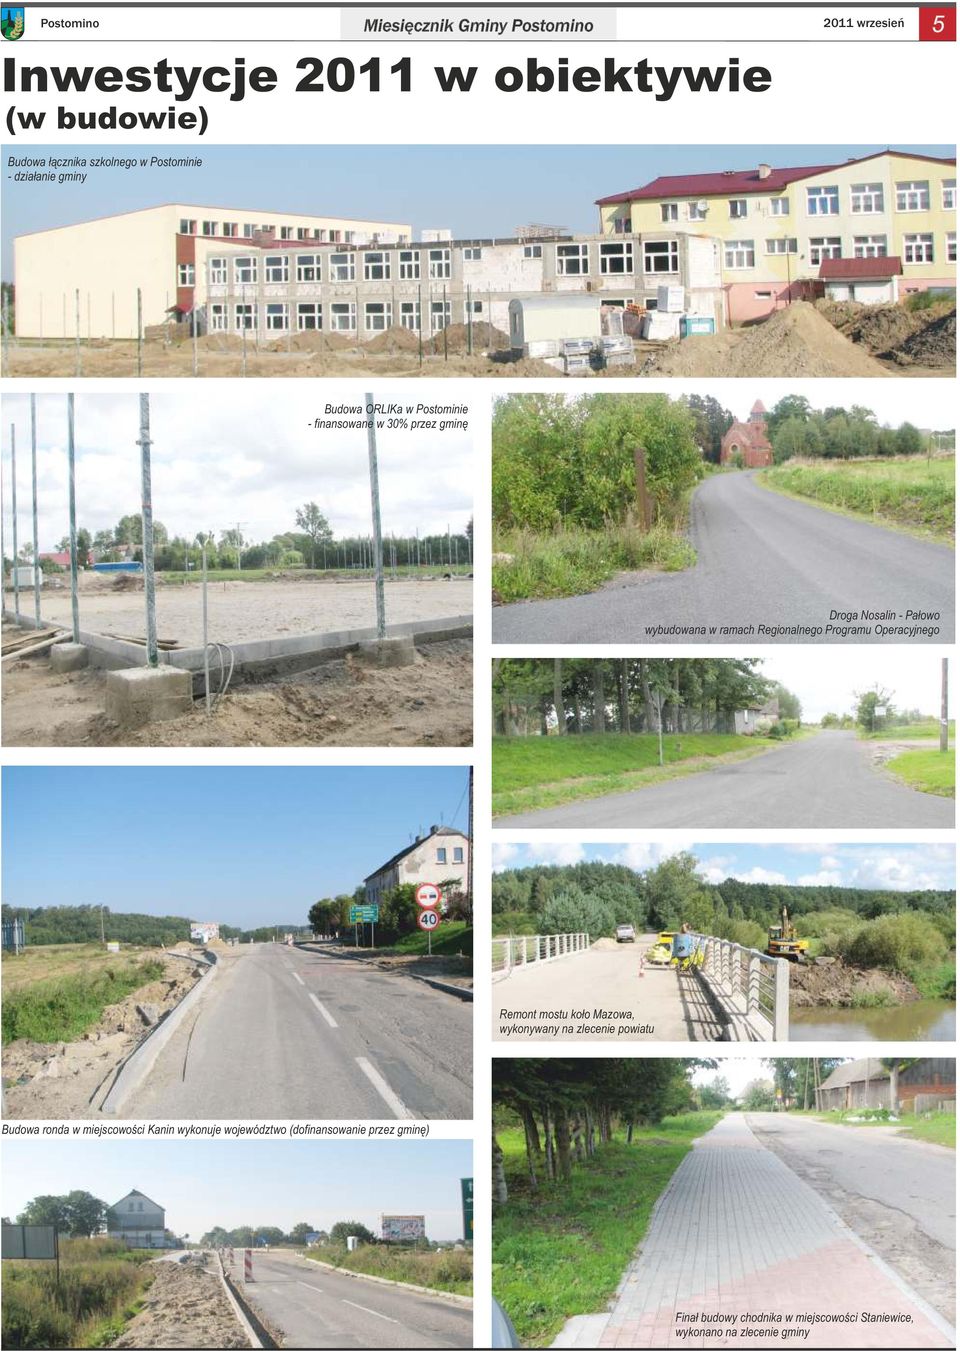 Regionalnego Programu Operacyjnego Remont mostu koło Mazowa, wykonywany na zlecenie powiatu Budowa ronda w miejscowości